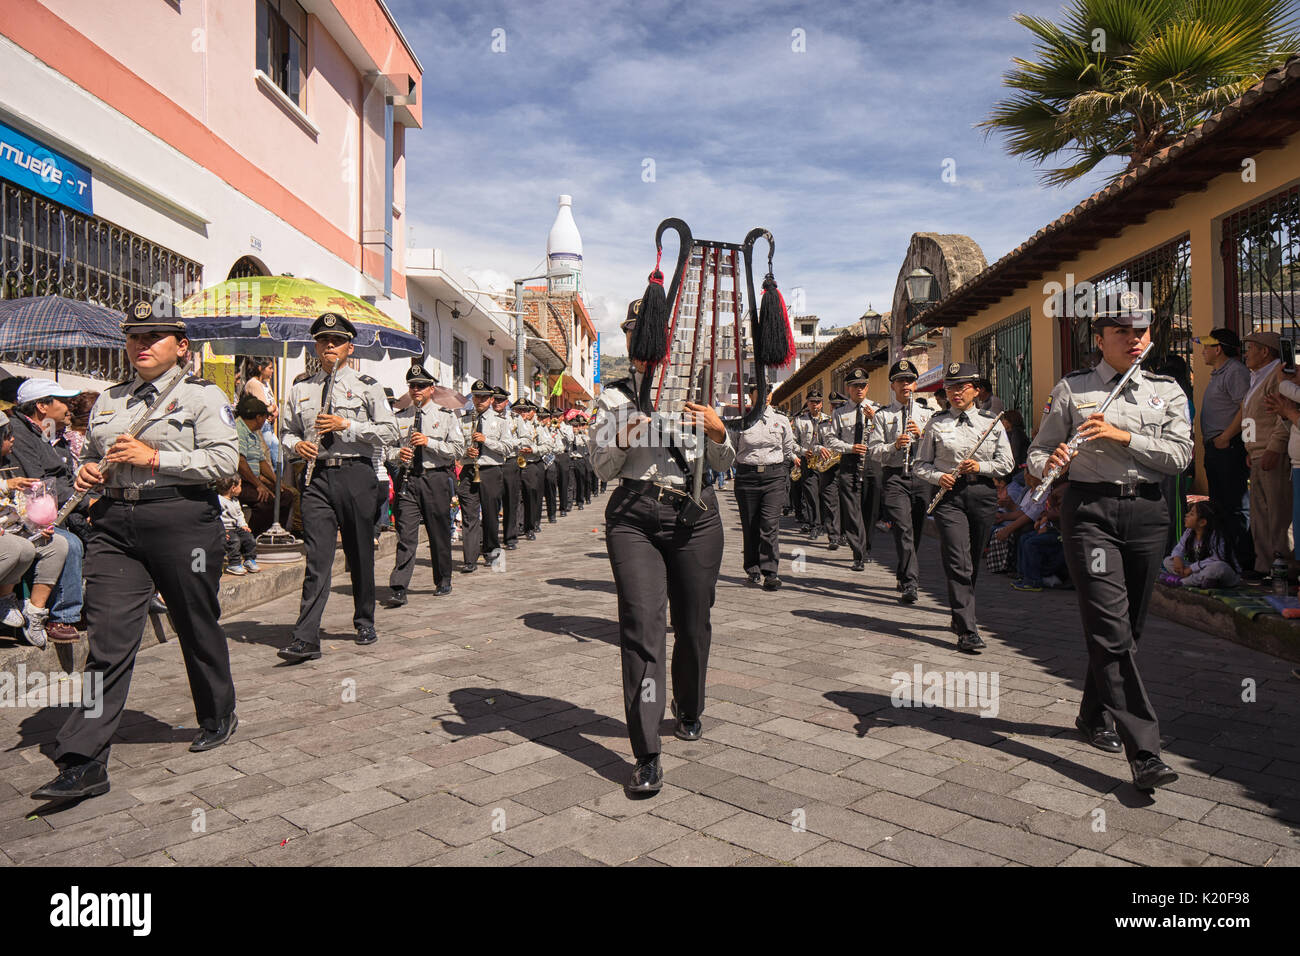 Giugno 17, 2017 Pujili, Ecuador: esecuzione di banda militare in marcia su strada presso il Corpus Christi eventi Foto Stock